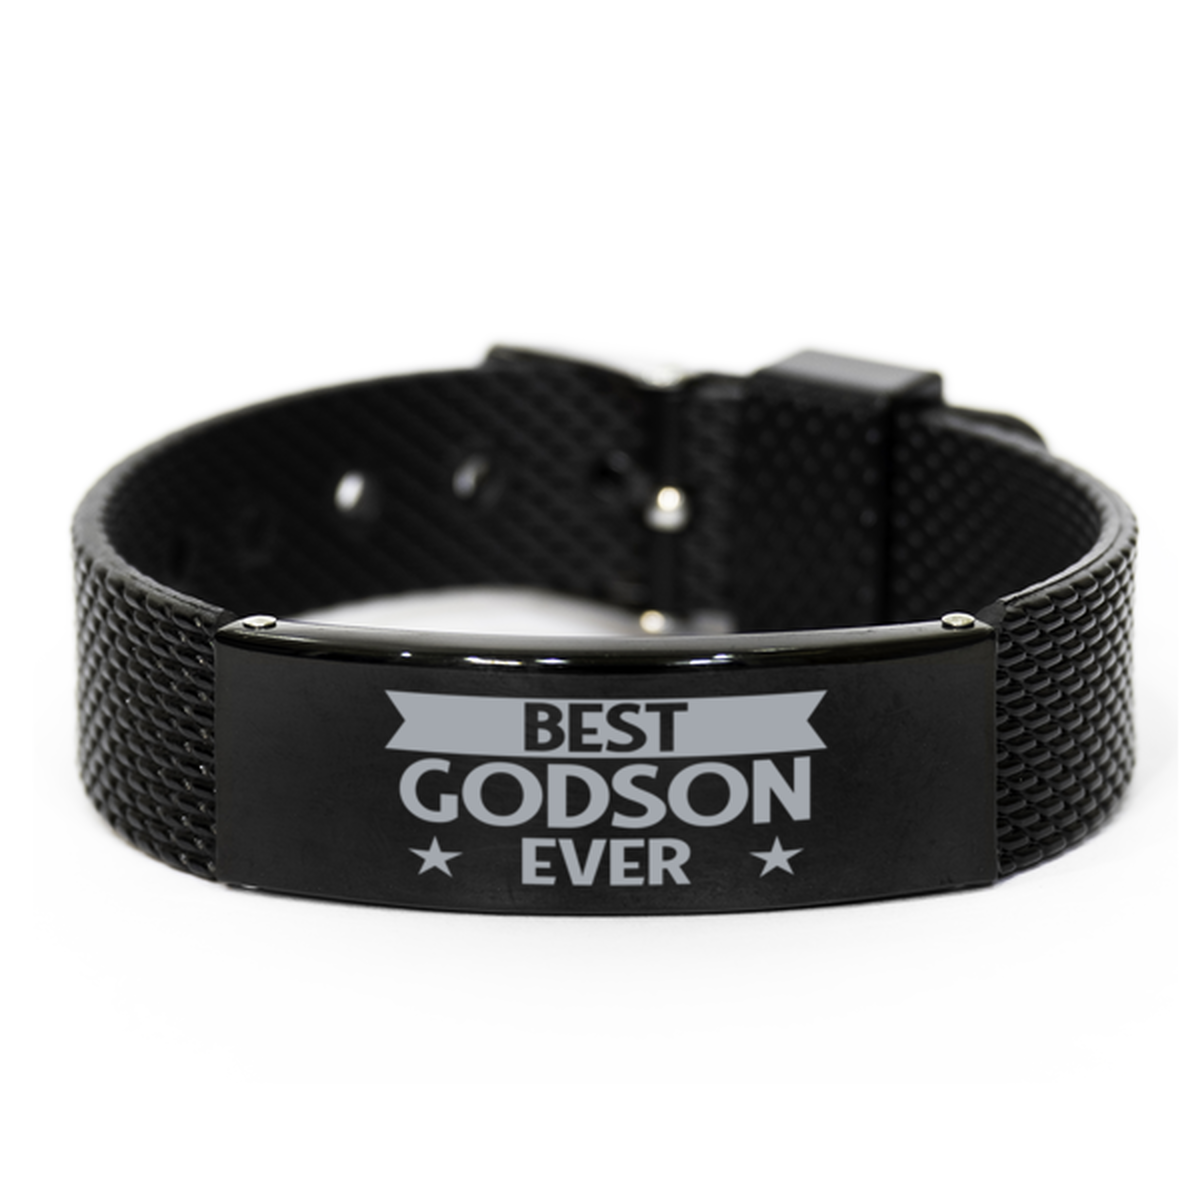 Best Godson Ever Godson Gifts, Gag Engraved Bracelet For Godson, Best Family Gifts For Men